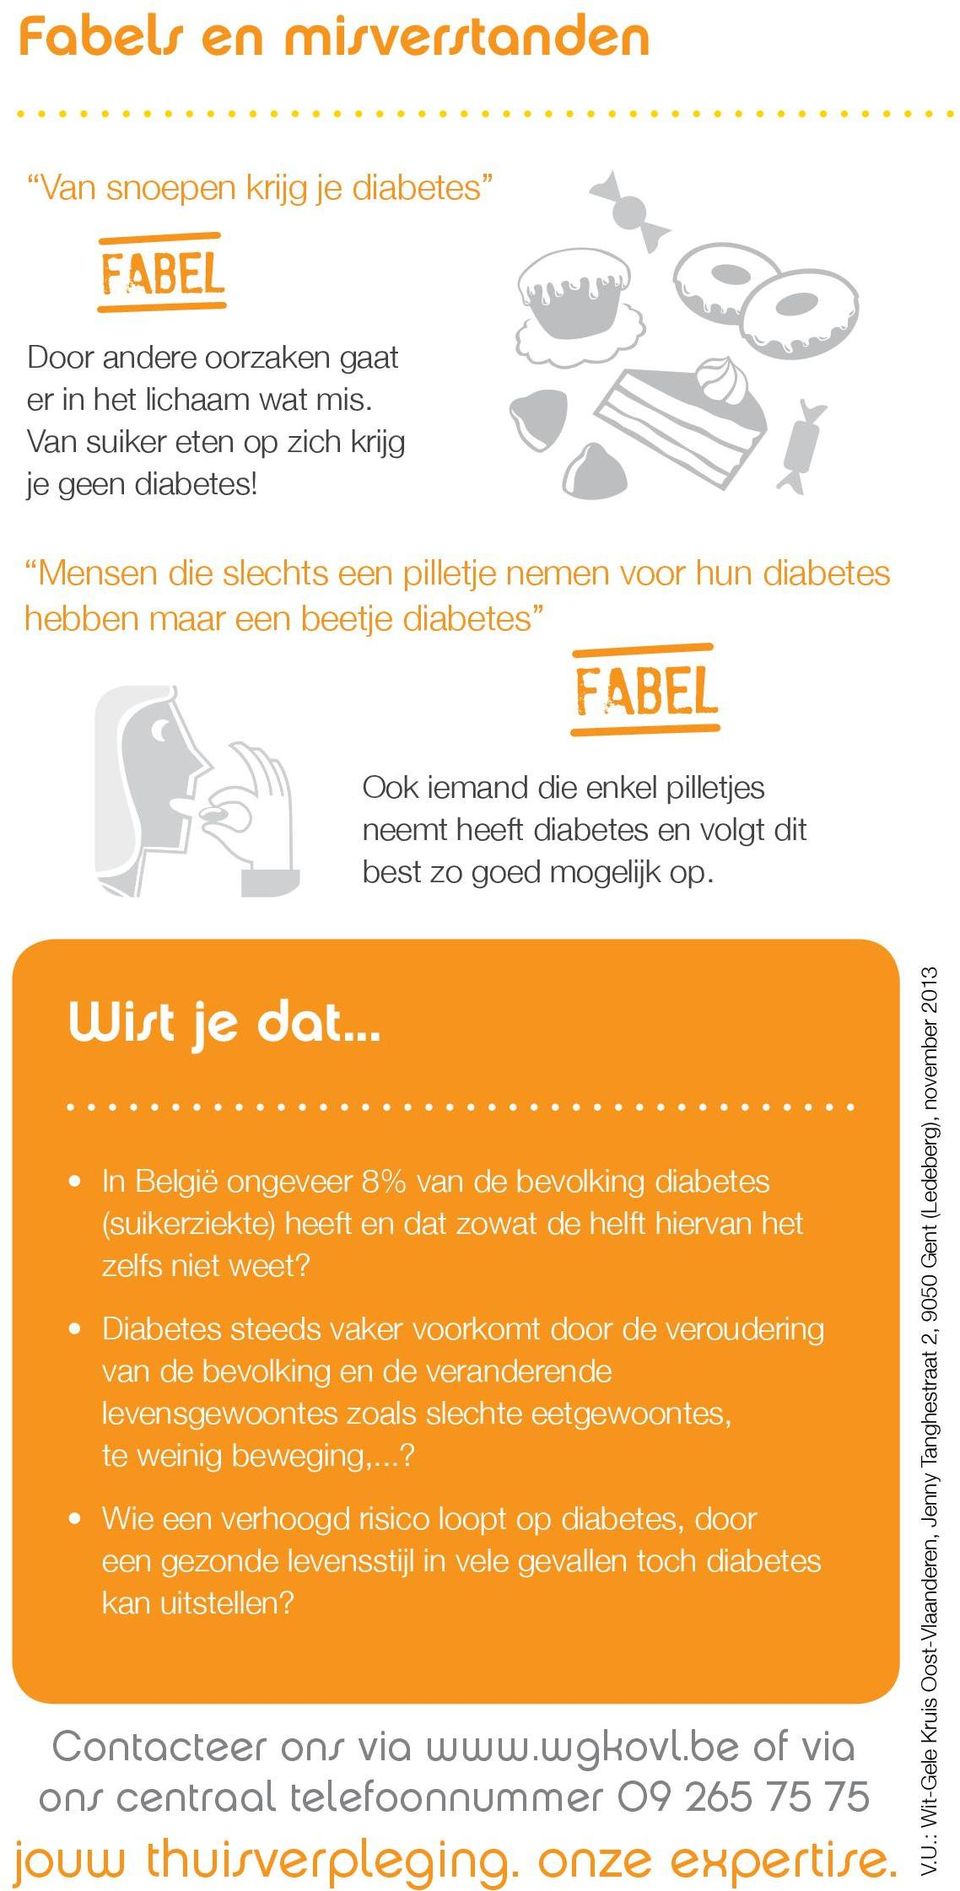 .. In België ongeveer 8% van de bevolking diabetes (suikerziekte) heeft en dat zowat de helft hiervan het zelfs niet weet?